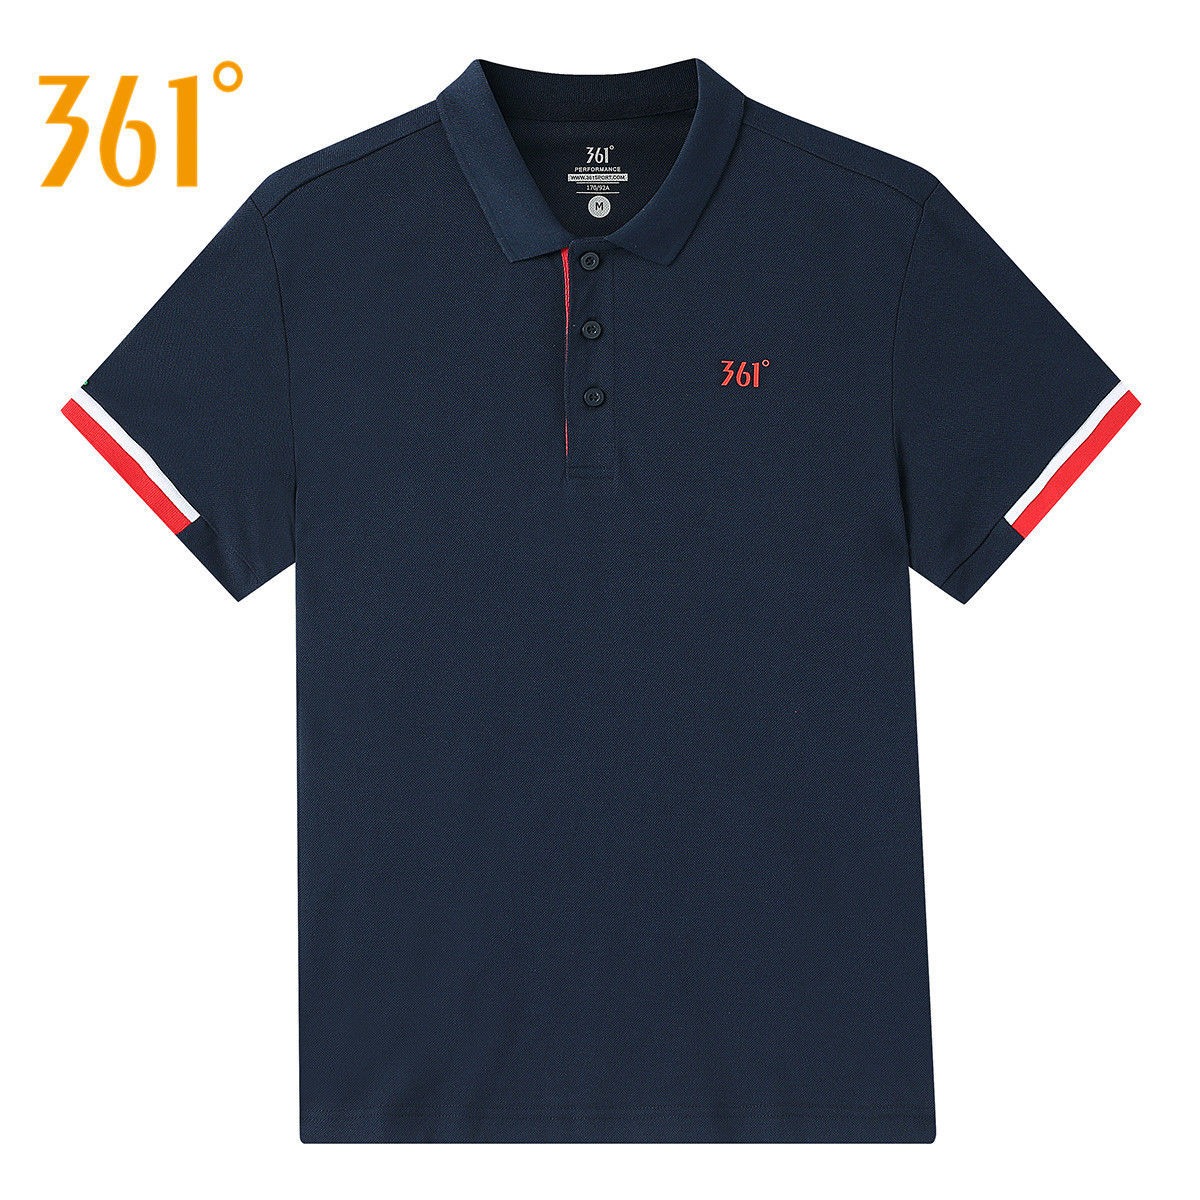 361运动polo衫男士夏季短袖t恤翻领时尚休闲半袖户外运动打底衫薄